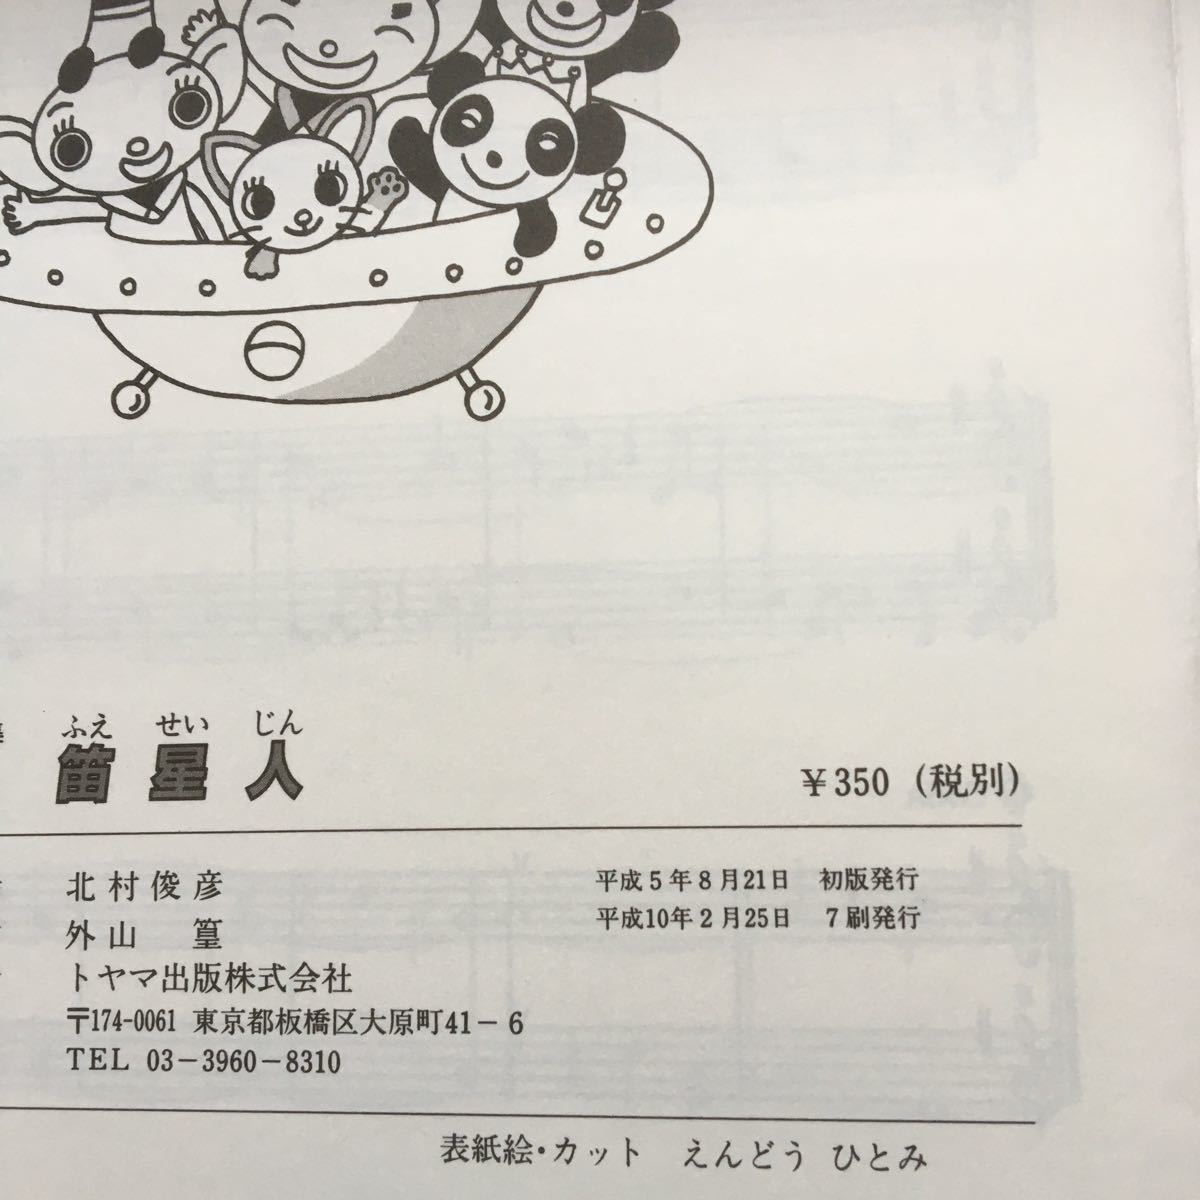  блок-флейта сборник!25 искривление! нестандартный 210 иен! без налогов 350 иен!toyama выпускать! не использовался 